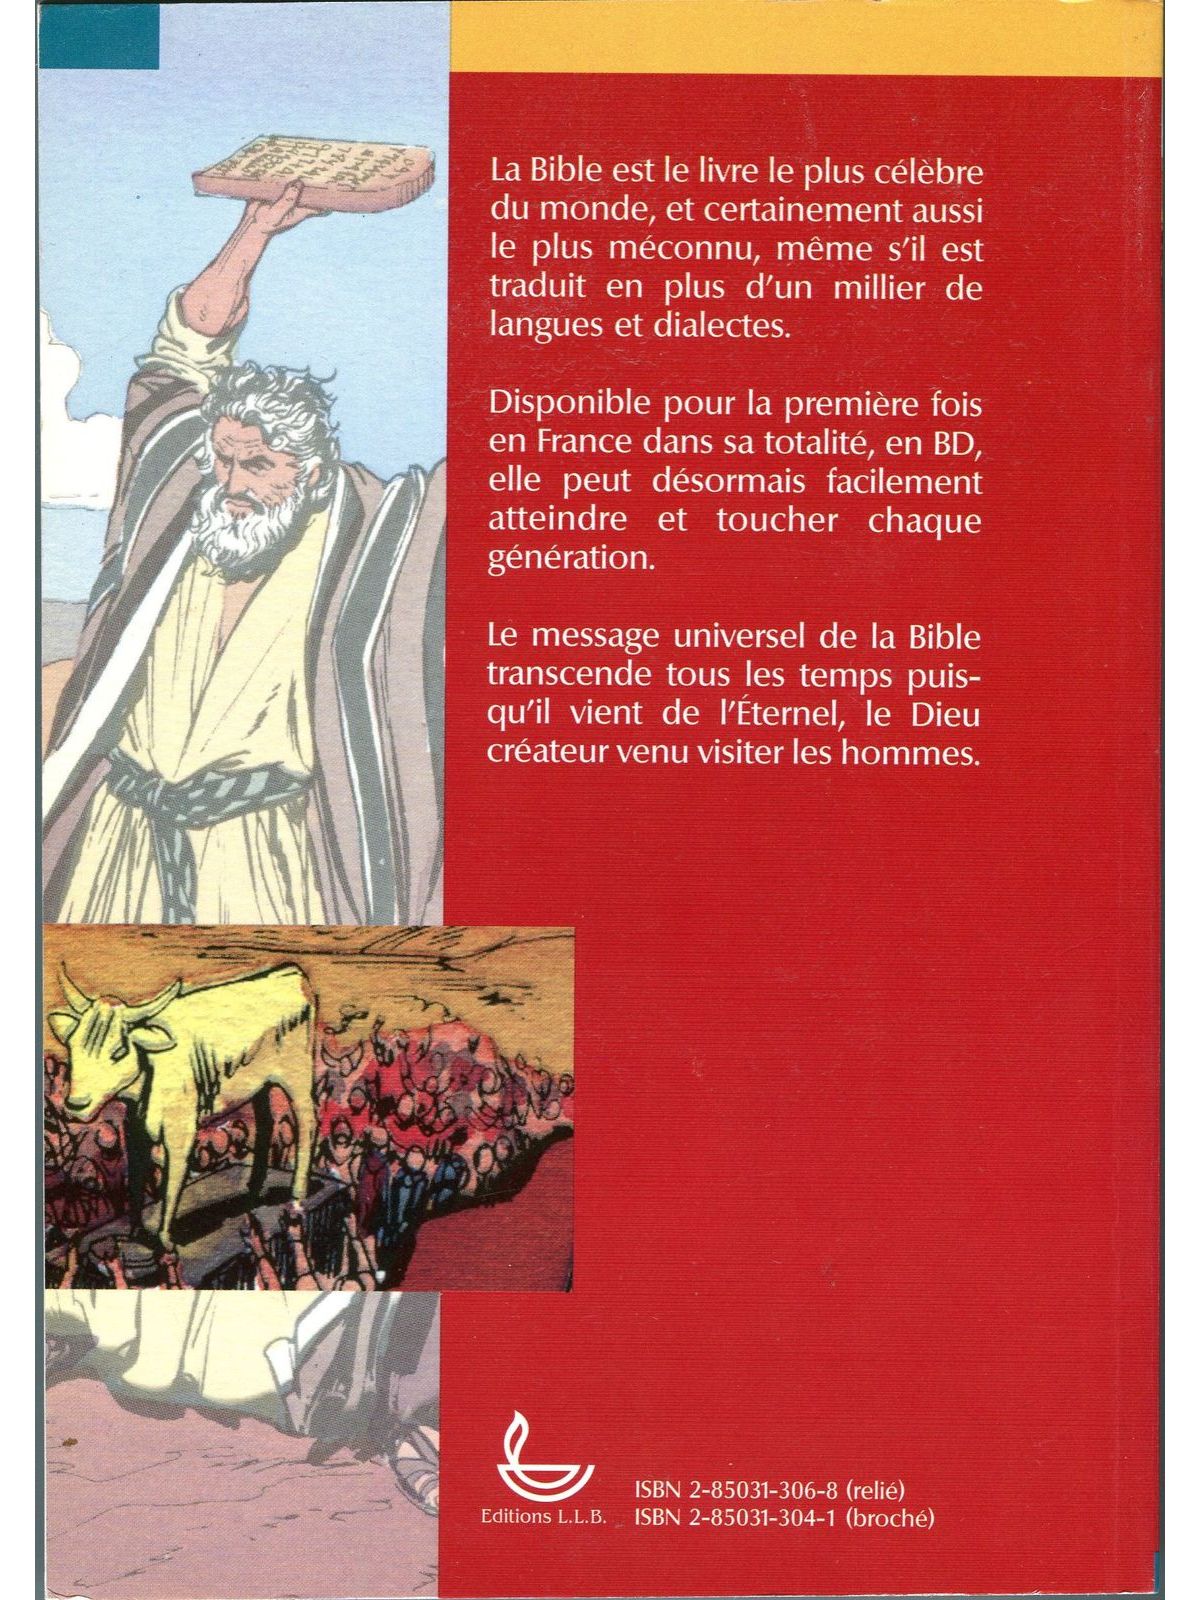 bible en bd (la)